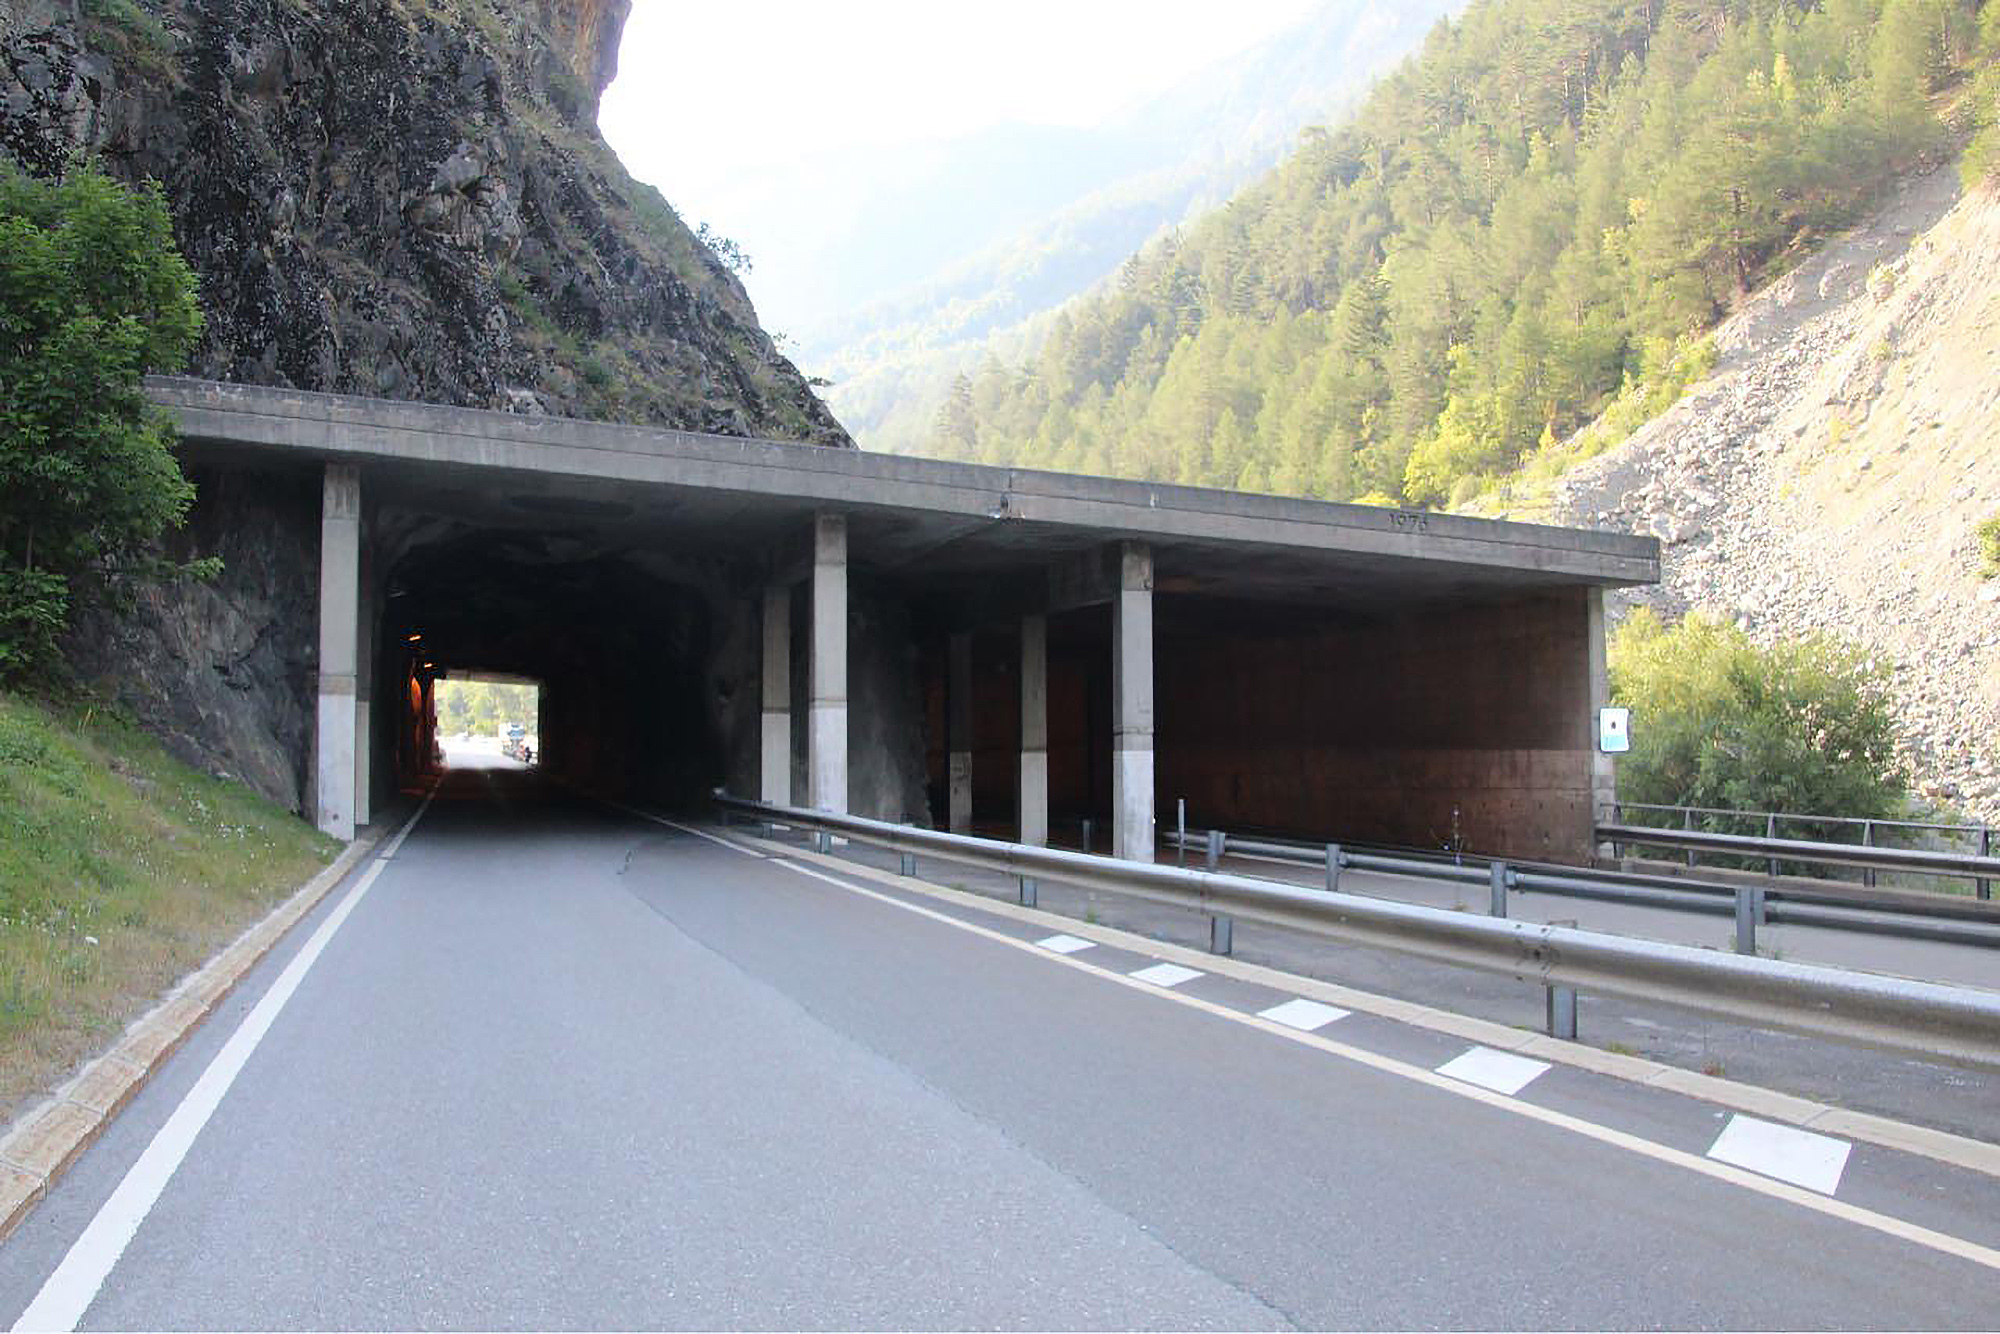 Le tunnel de la Monnaie (à gauche) sera fermé ce vendredi 23 octobre. Le trafic sera dévié, en mode bidirectionnel, dans la galerie adjacente (à droite).